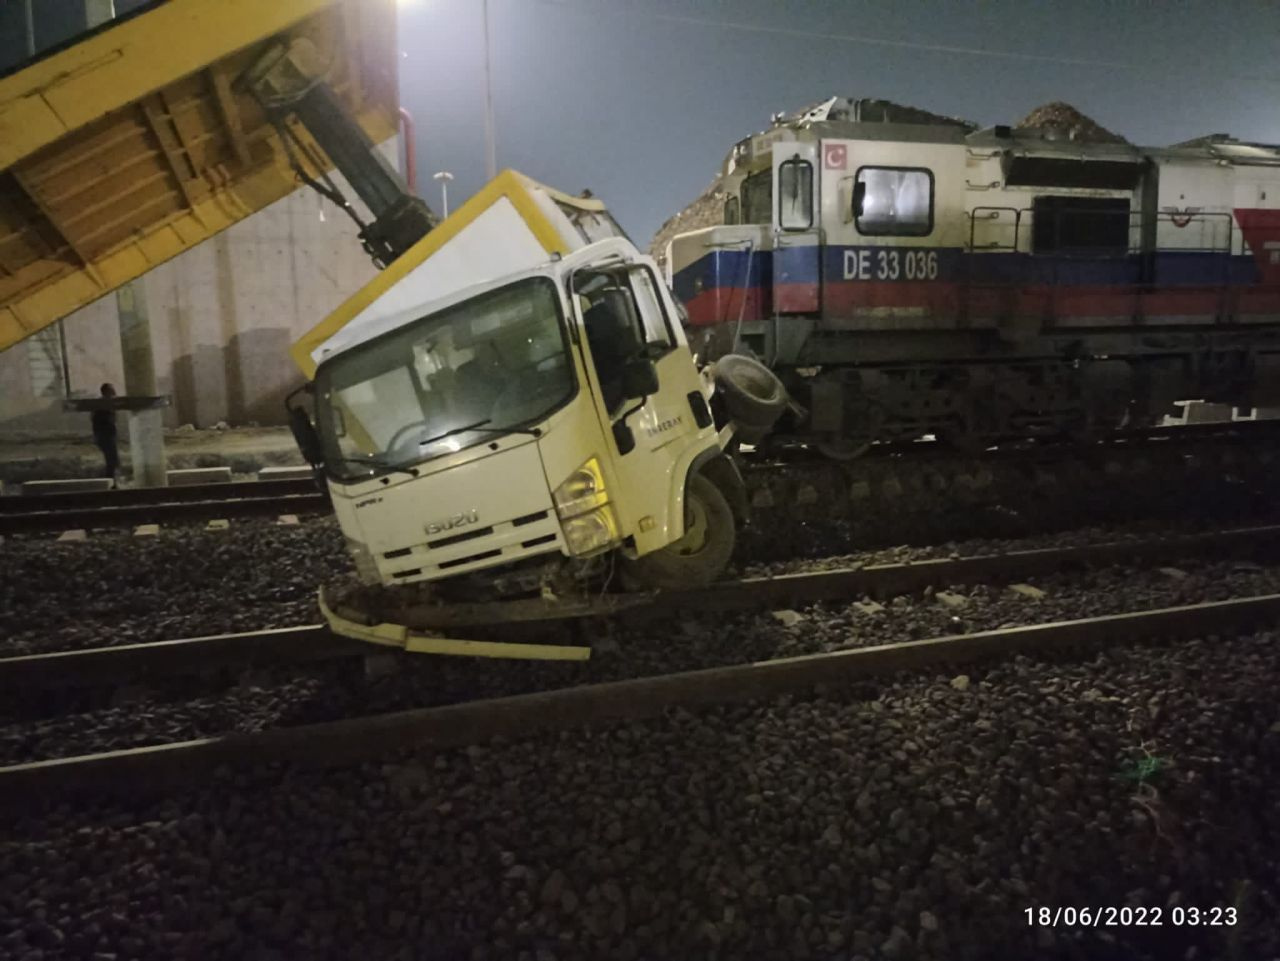 Demiryoluna elektrik hattı döşeyen işçilerin feci ölümü! Lokomotif çarptı